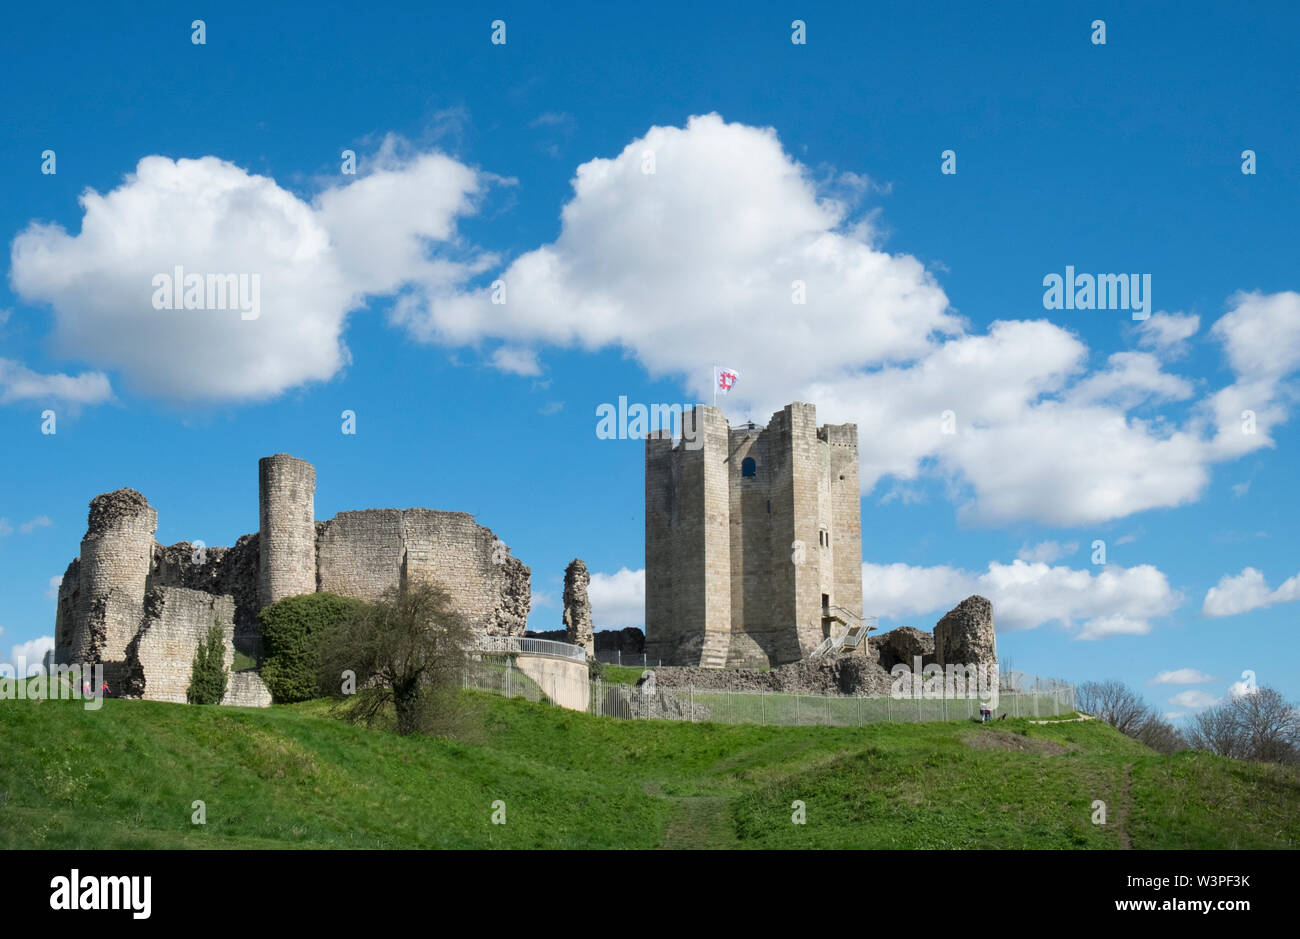 Castillo de Conisbrough, Conisbrough, South Yorkshire, Reino Unido el 17 de abril de 2016 el castillo medieval que se erige entre Rotherham y Doncaster se encuentra ahora en la ca Foto de stock